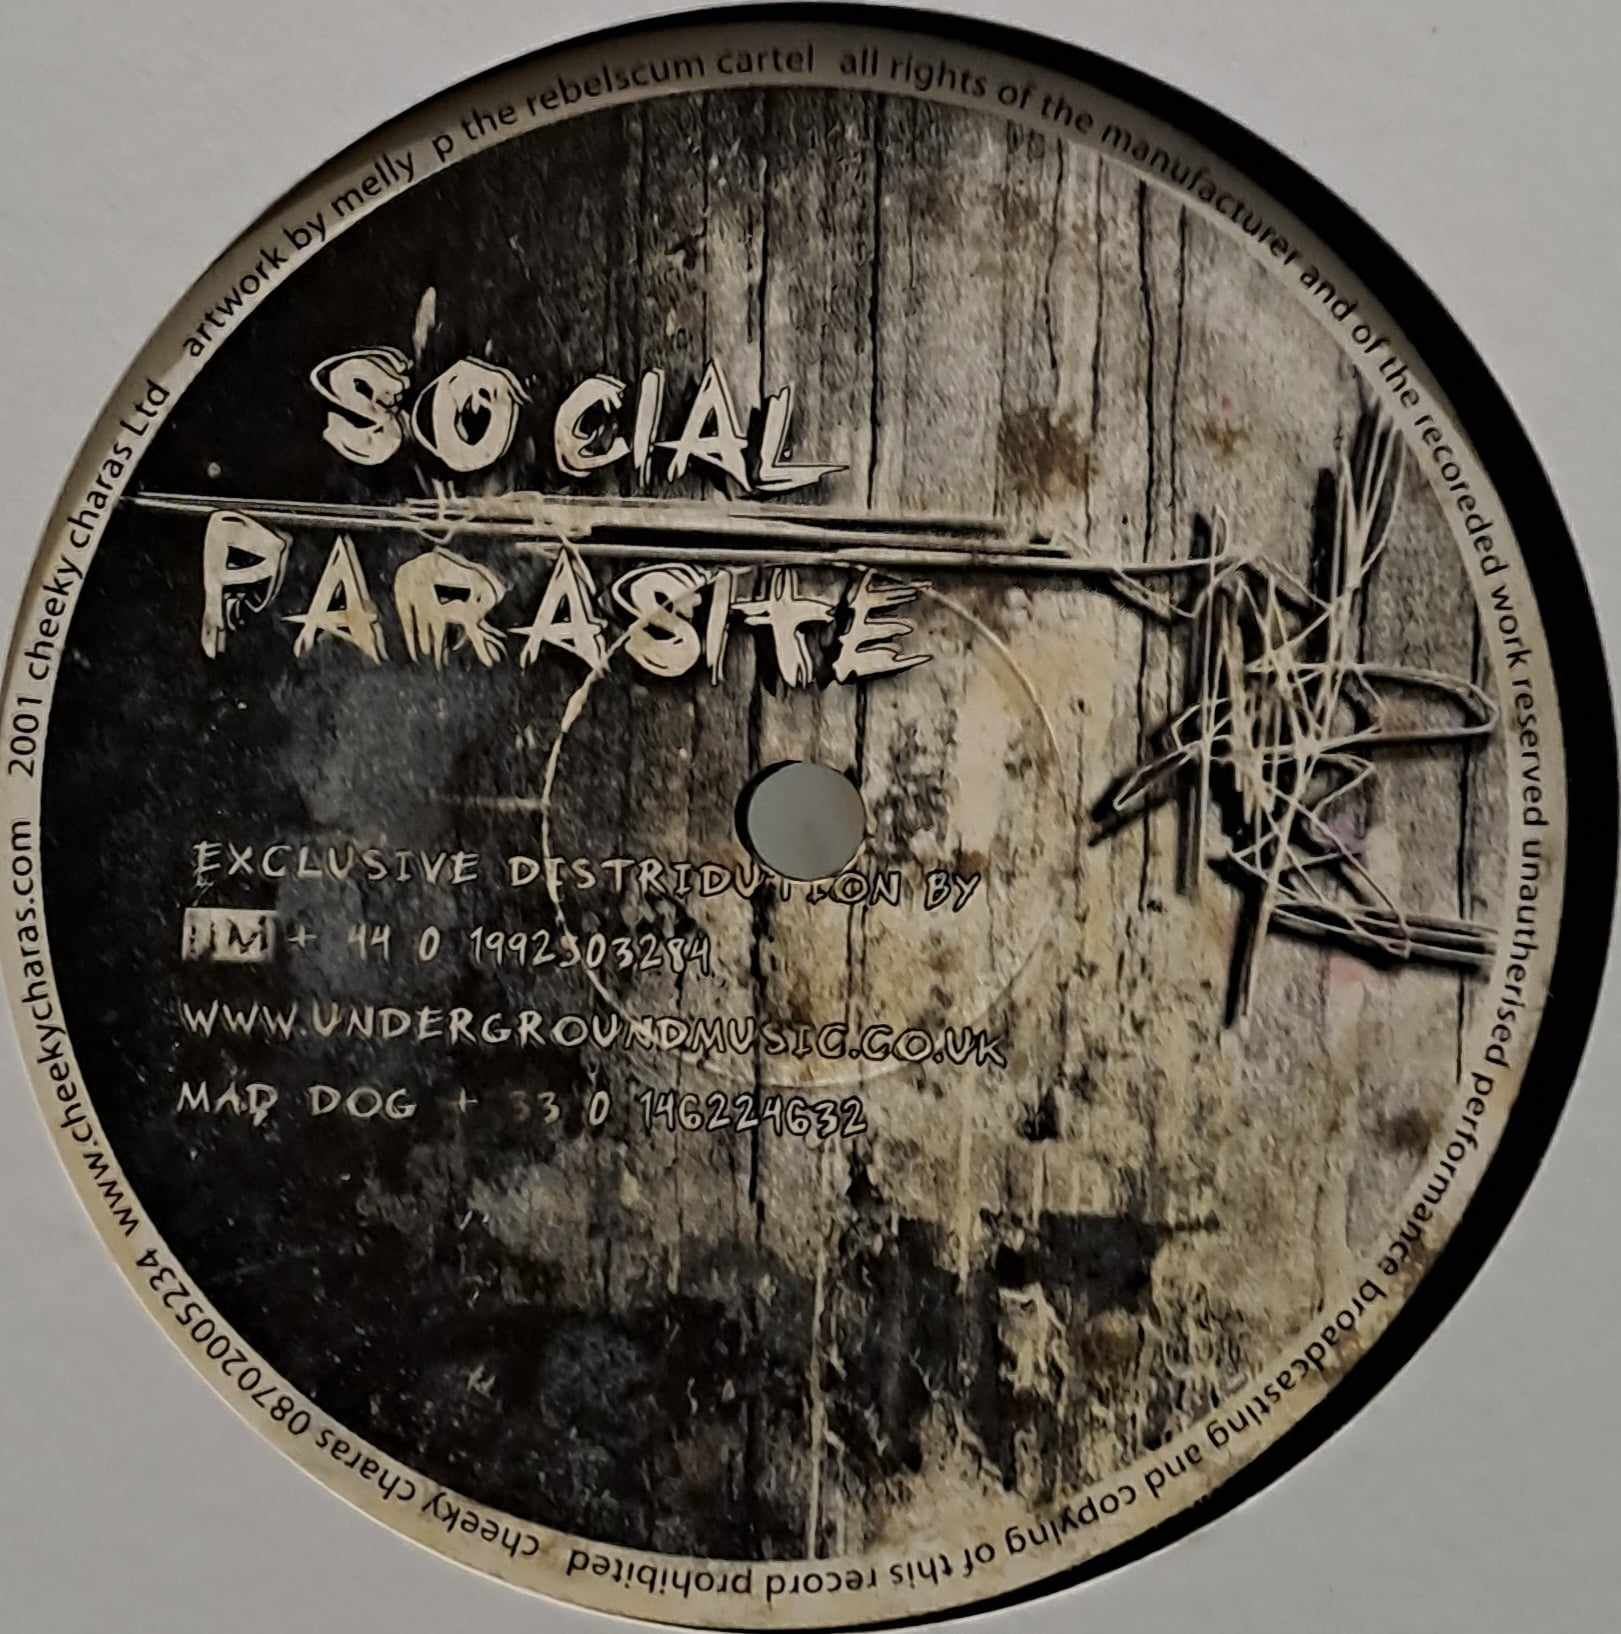 Social Parasite 06 - vinyle hardcore